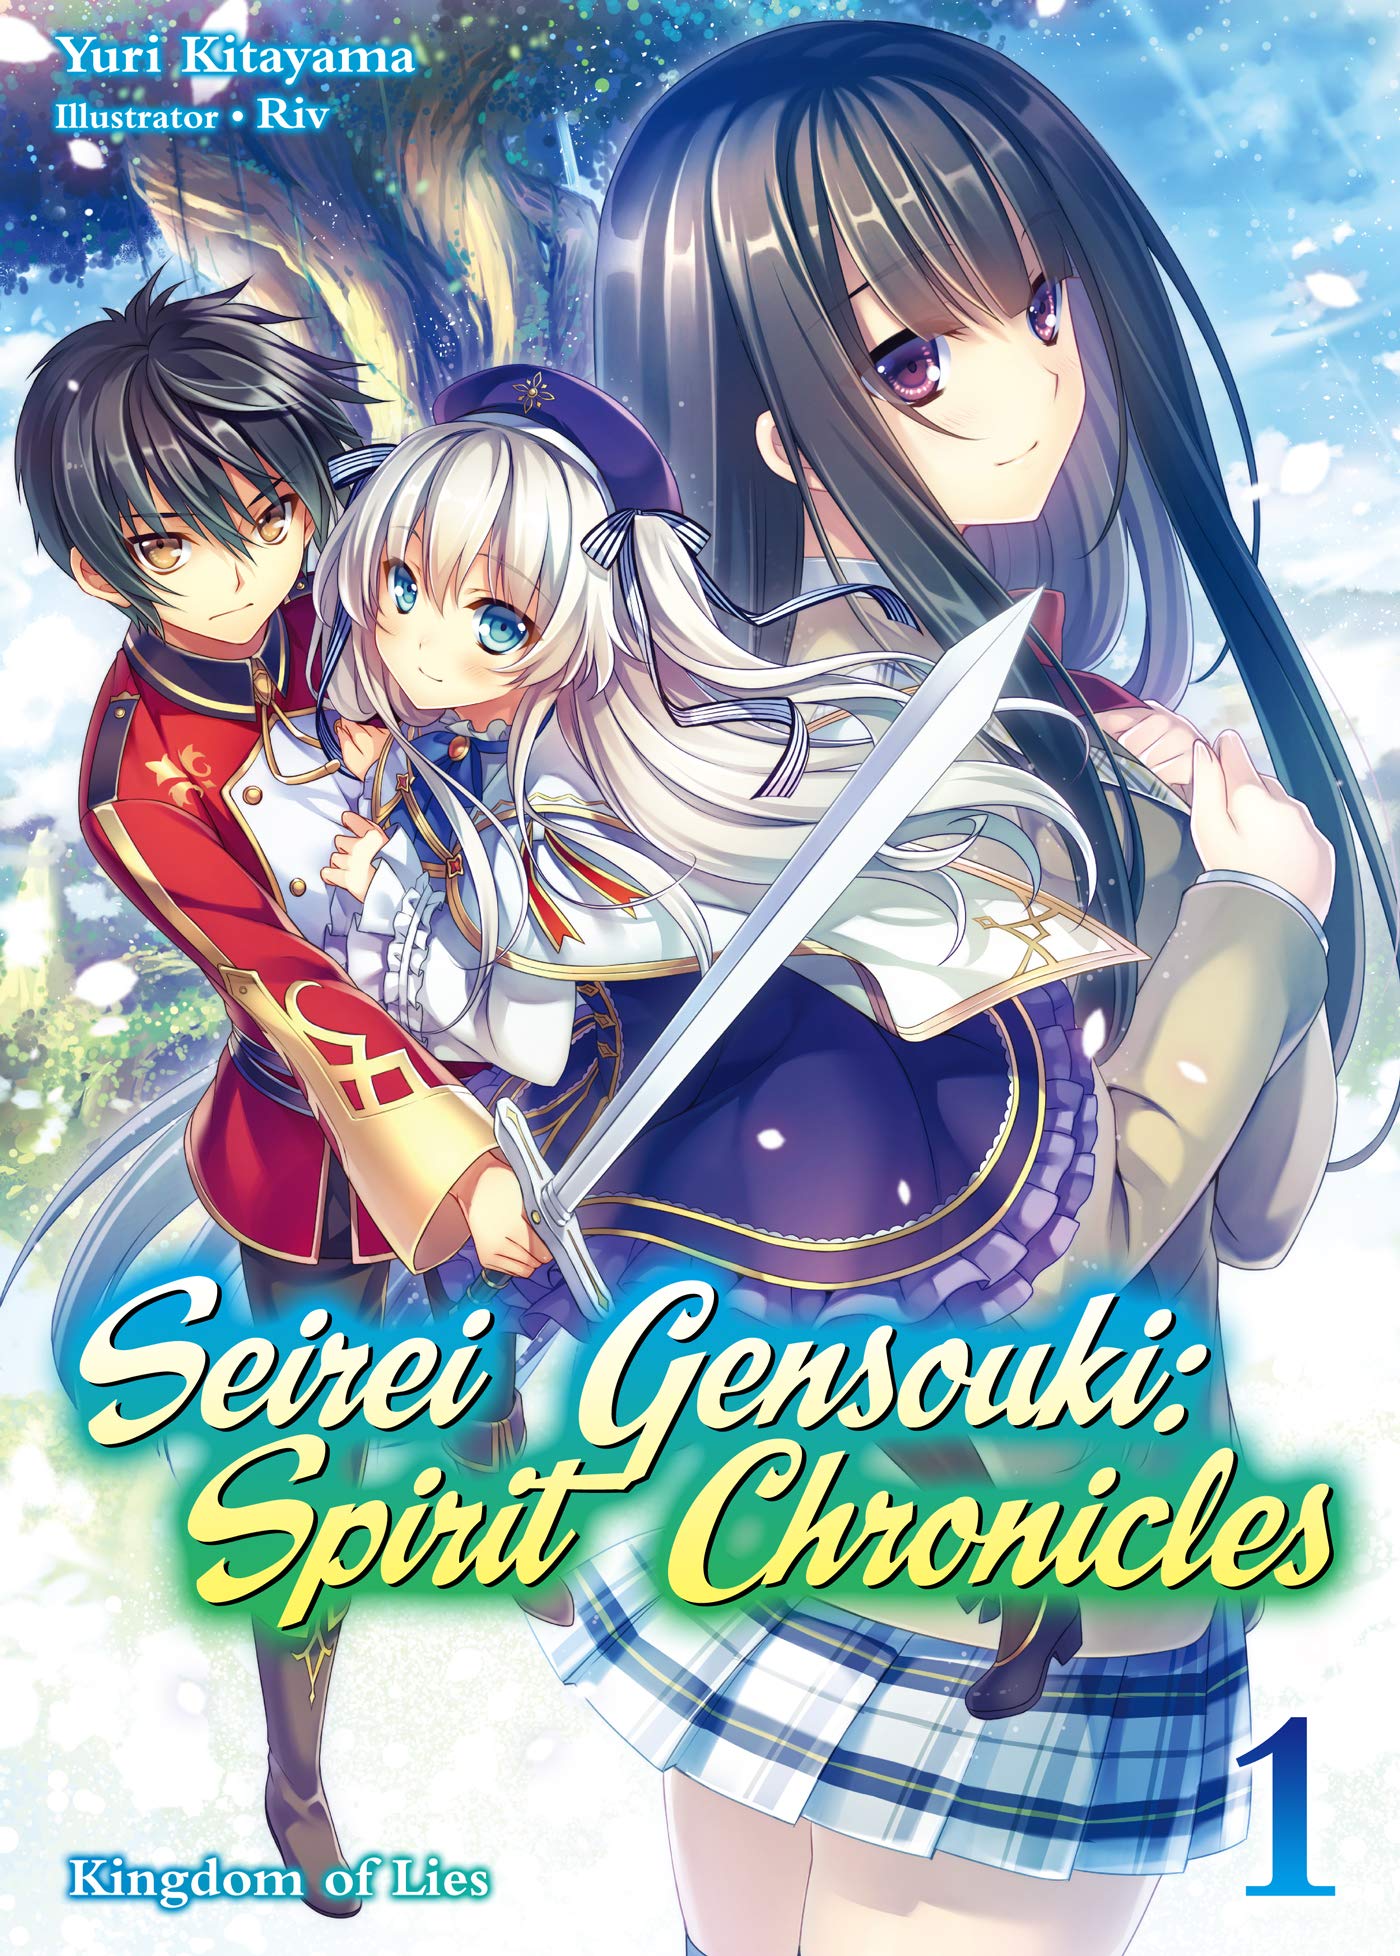 Seirei Gensouki: Spirit Chronicles - Episódio 1 (Dublado) 